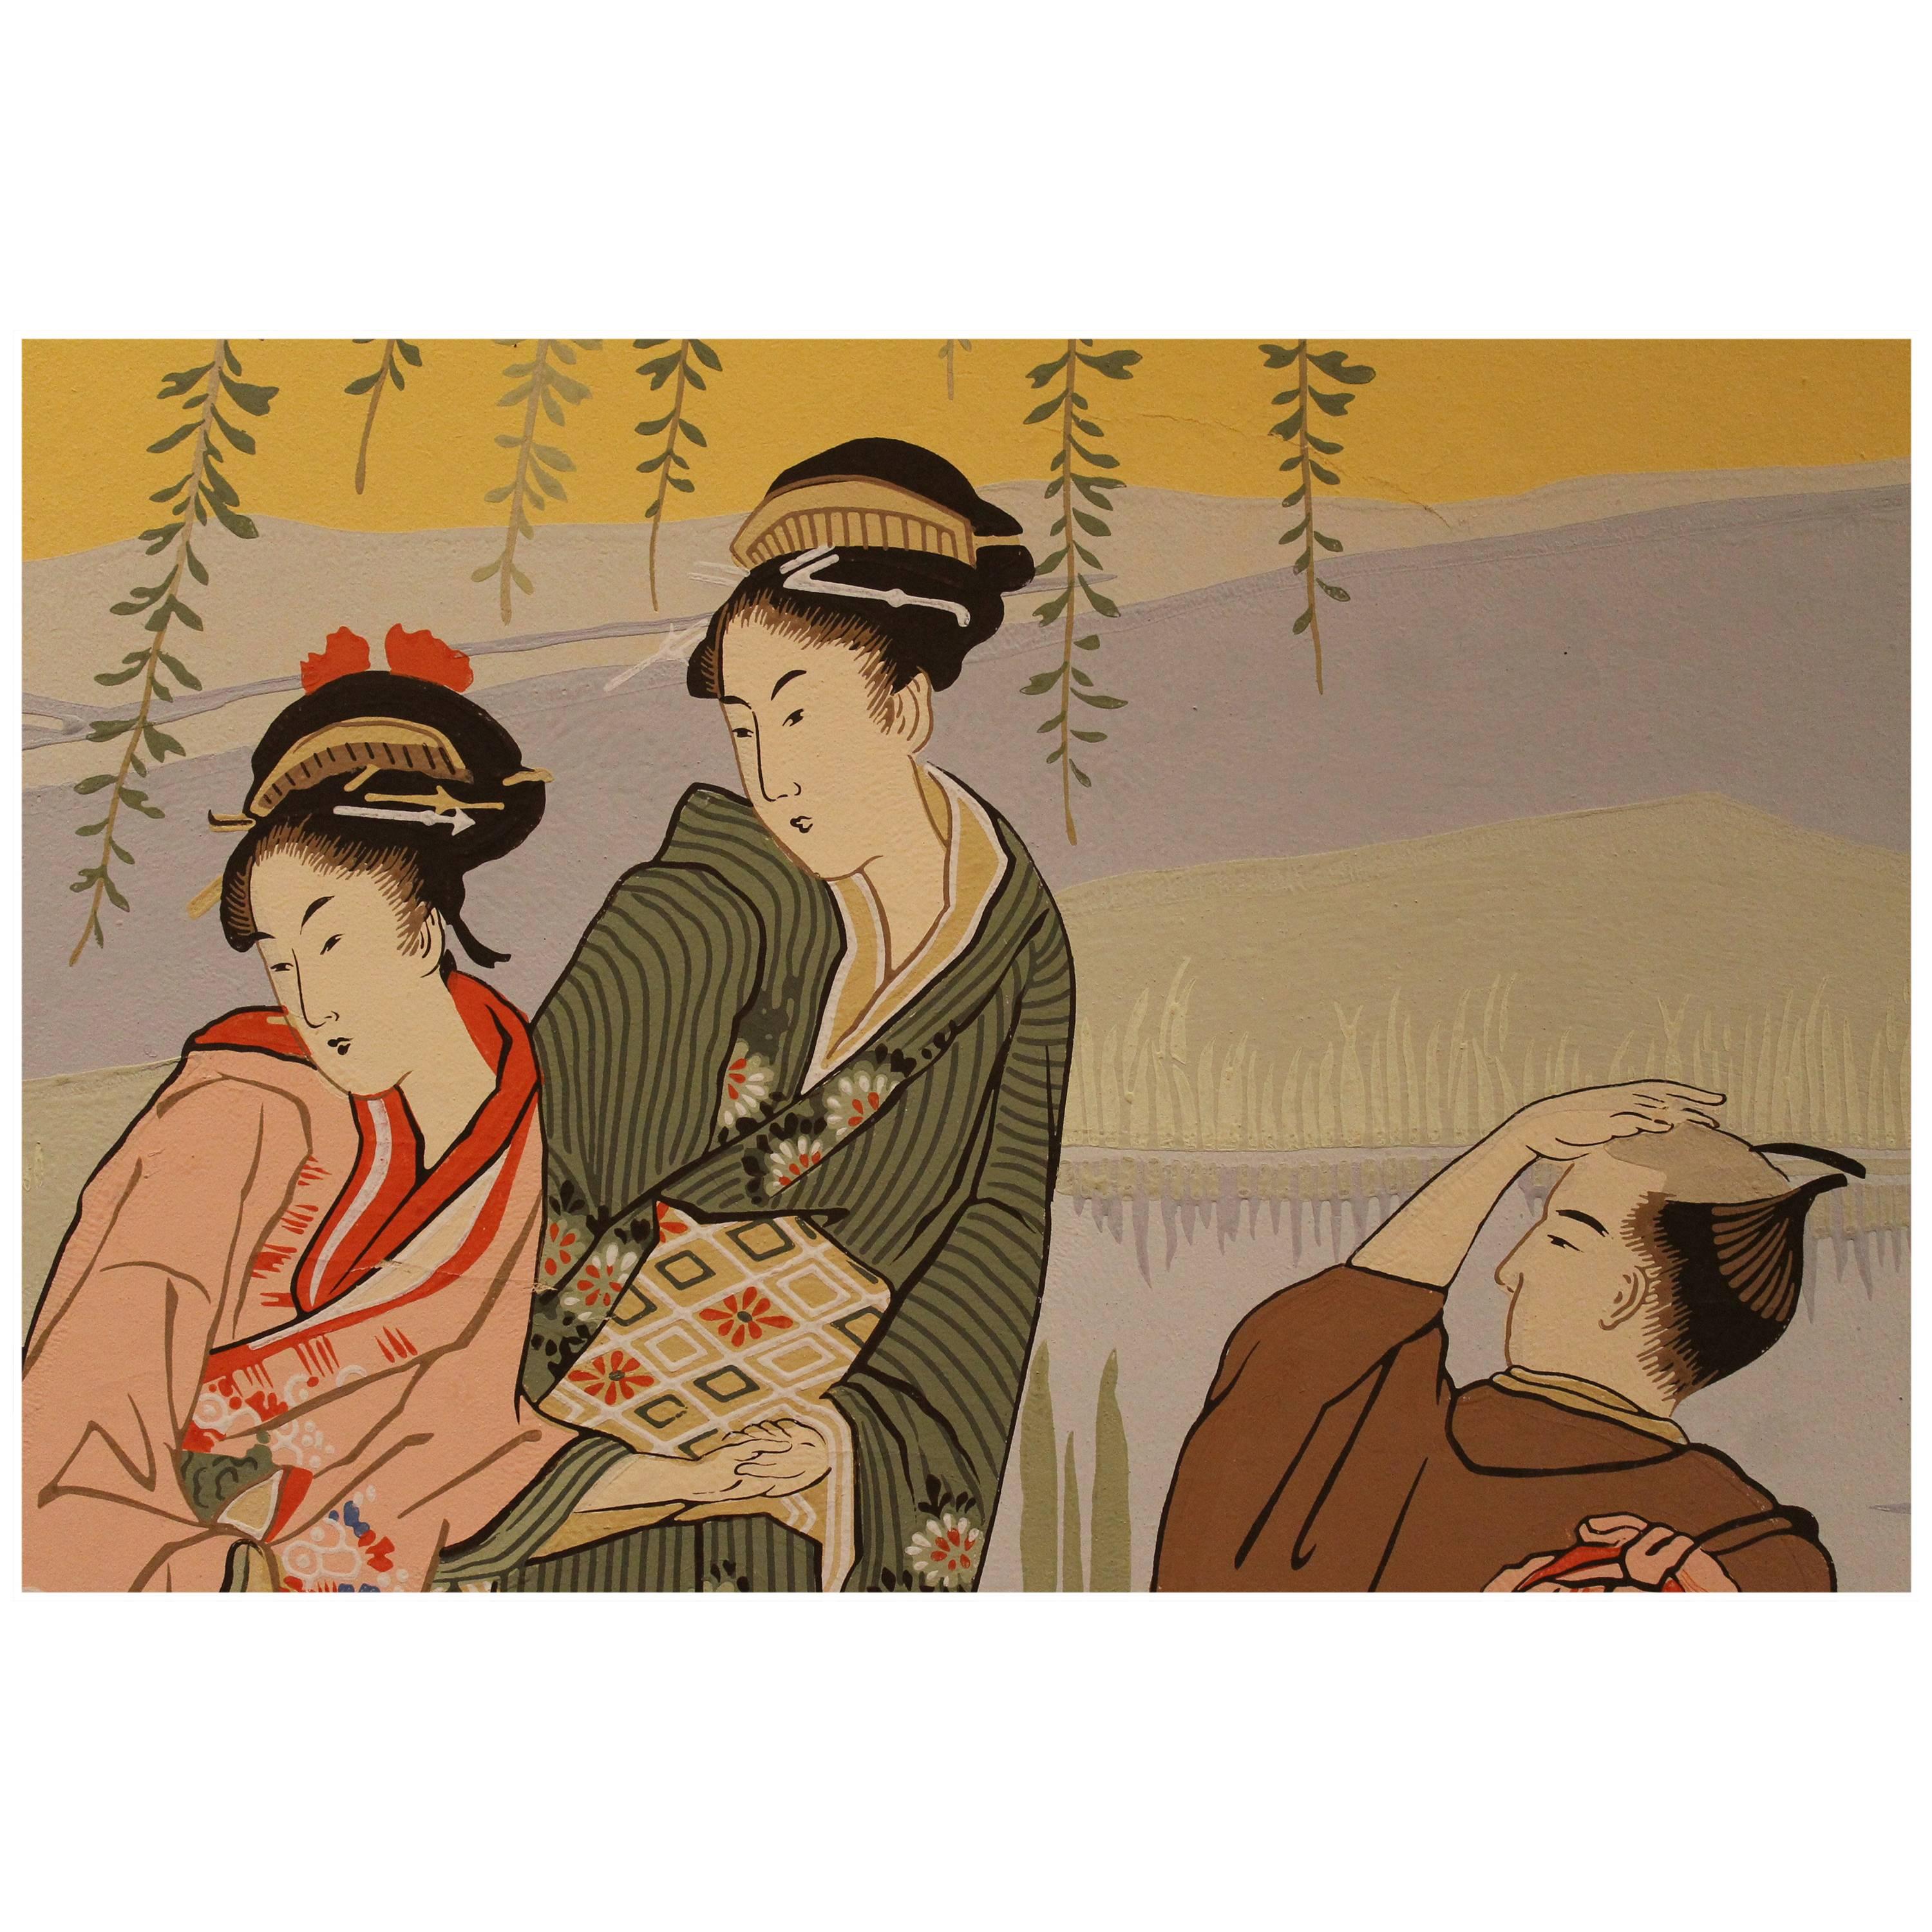 Diese antike und charmante Tapete aus der französischen Manufaktur Zuber aus dem frühen 20. Jahrhundert besteht aus fünf Rollen, die mit alten Holzblöcken handbemalt sind. Die Tafeln zeigen eine japanische Landschaft mit Figuren in traditioneller